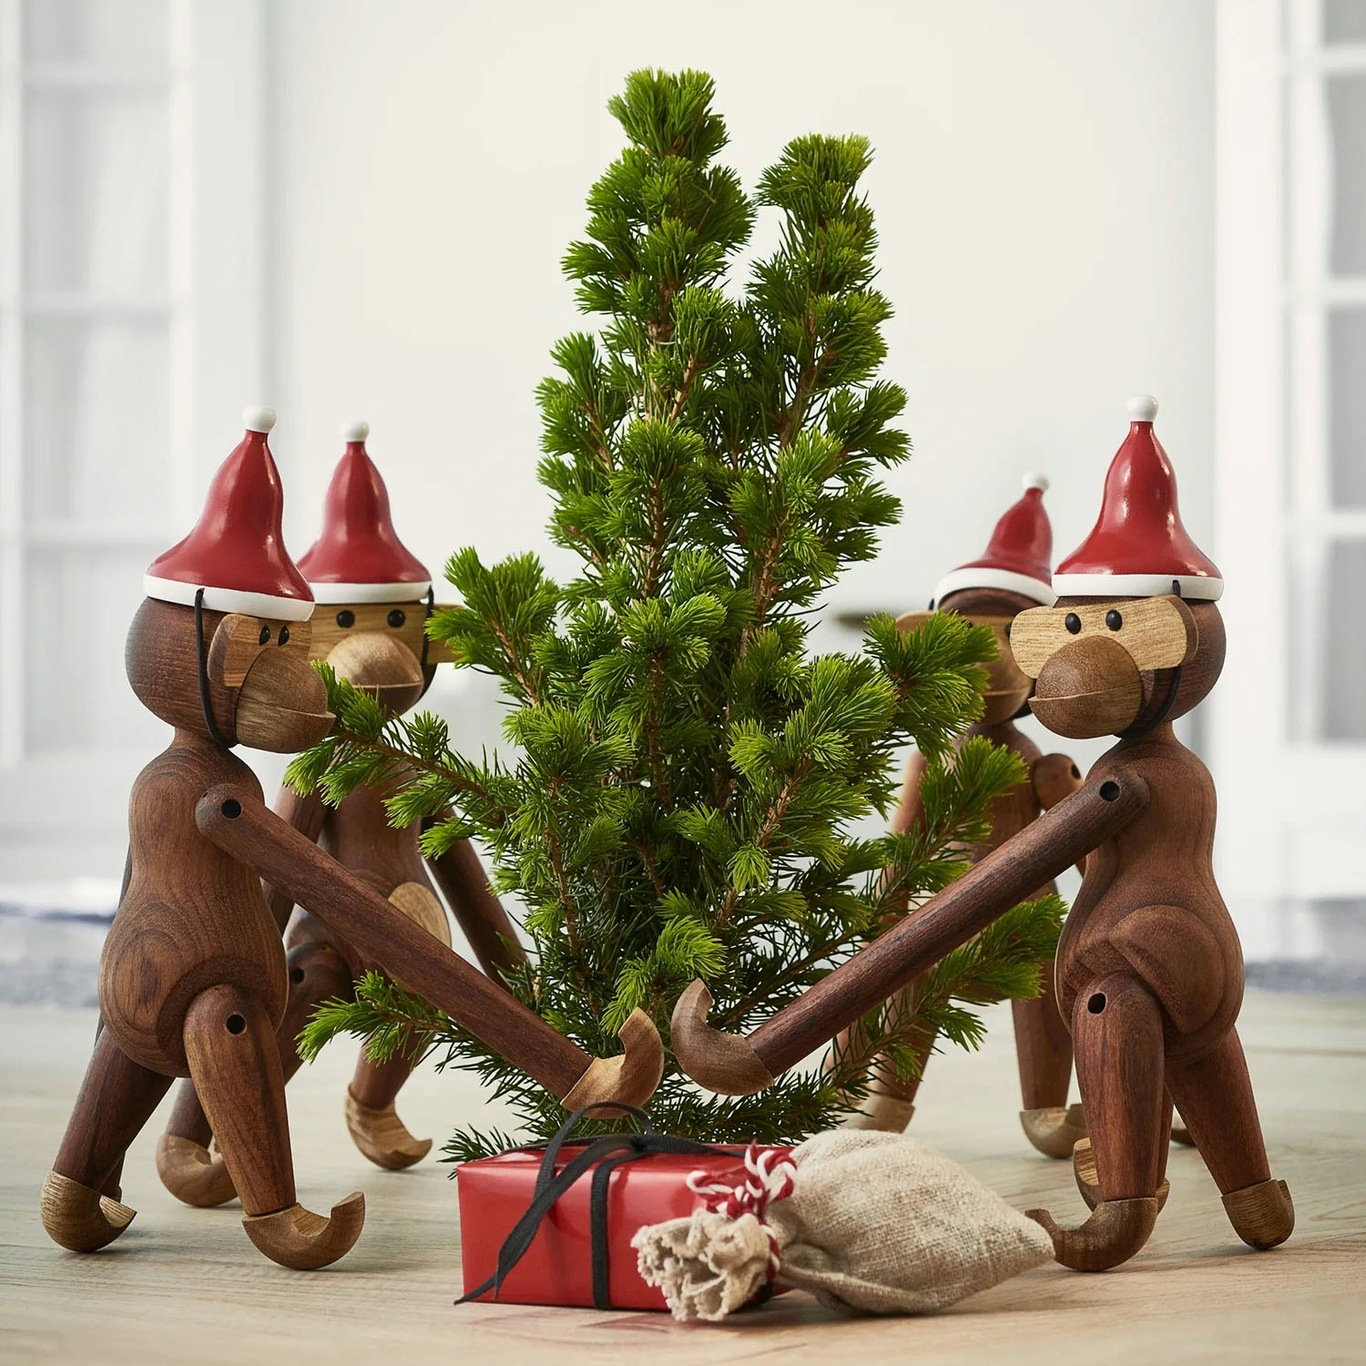 Kay Bojesen - Santa Claus & Santa Claus wooden ornaments